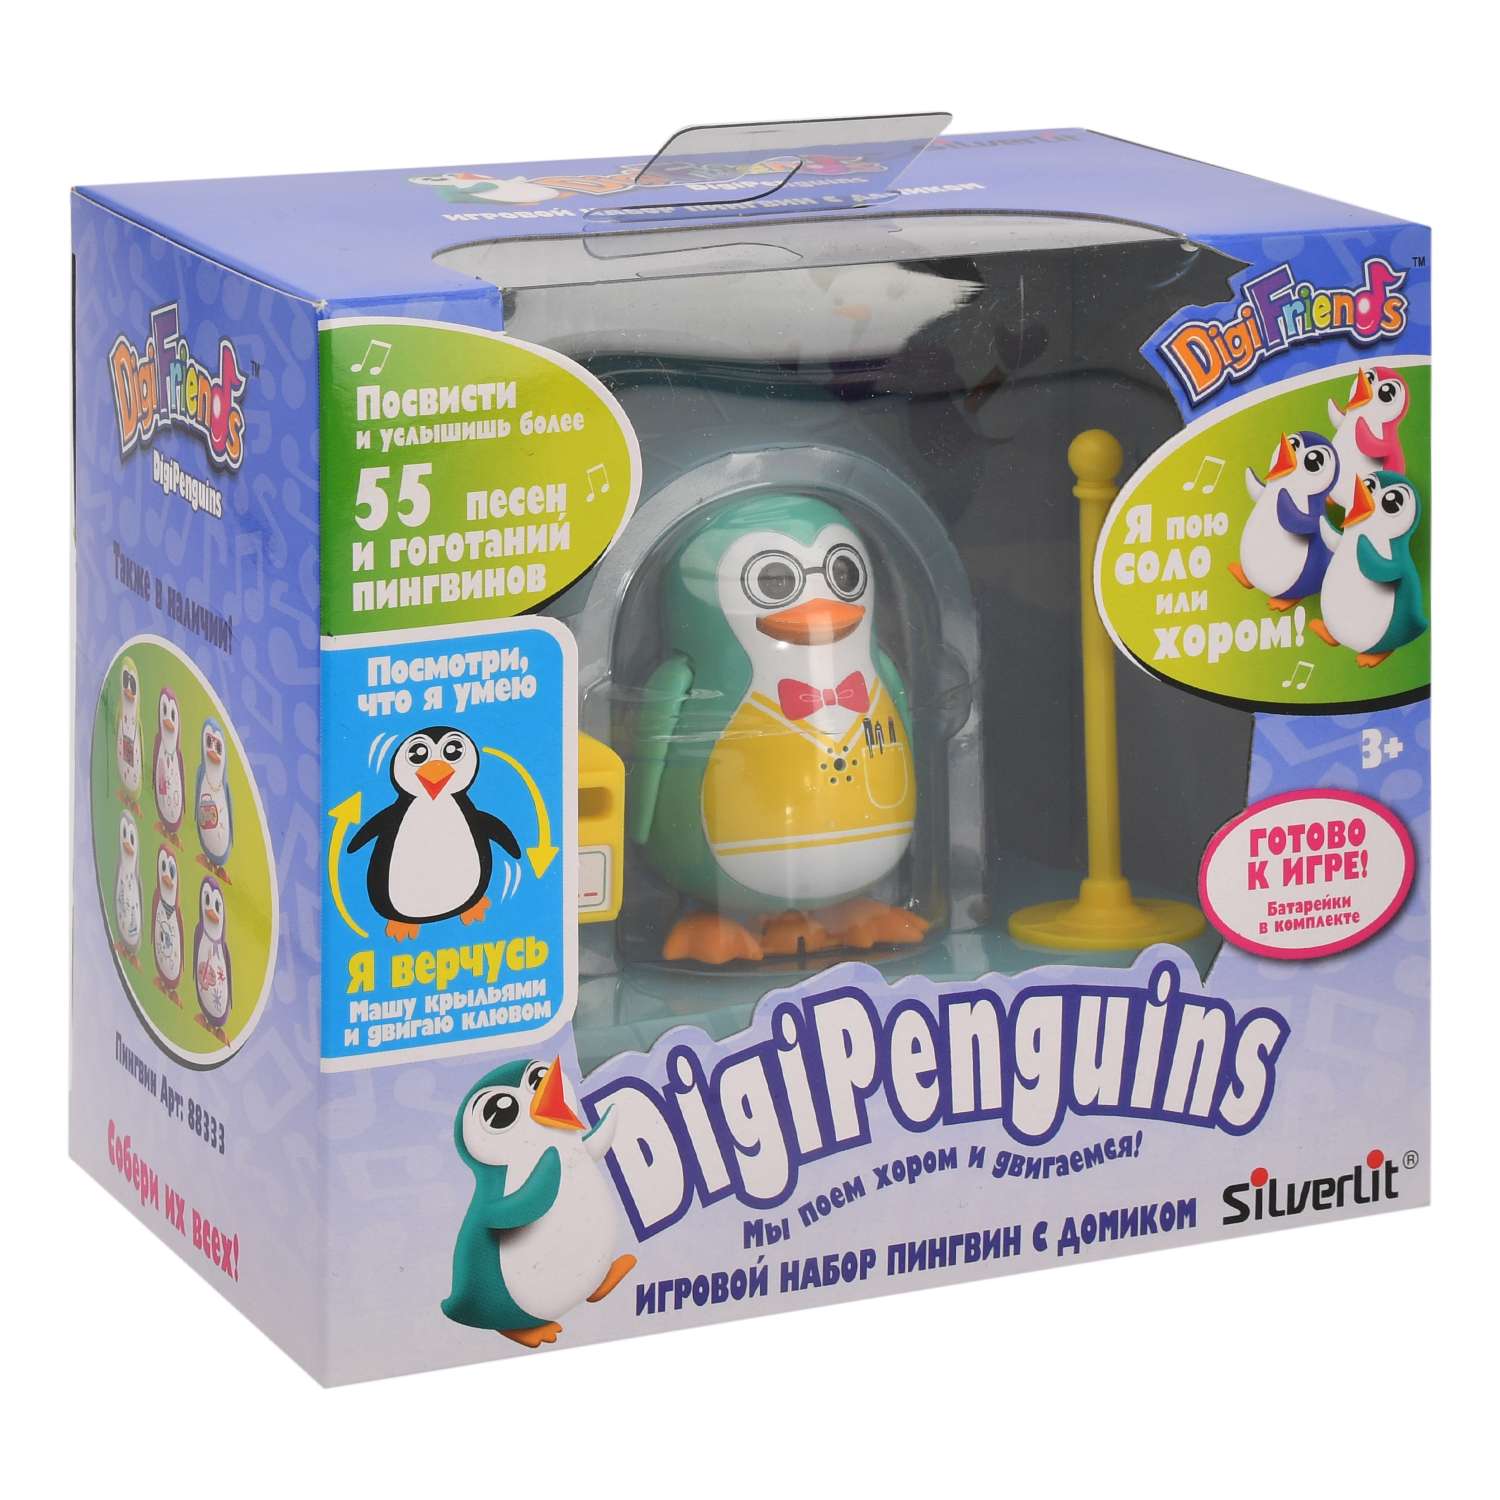 Пингвин в домике Silverlit интерактивный в ассортименте - фото 3